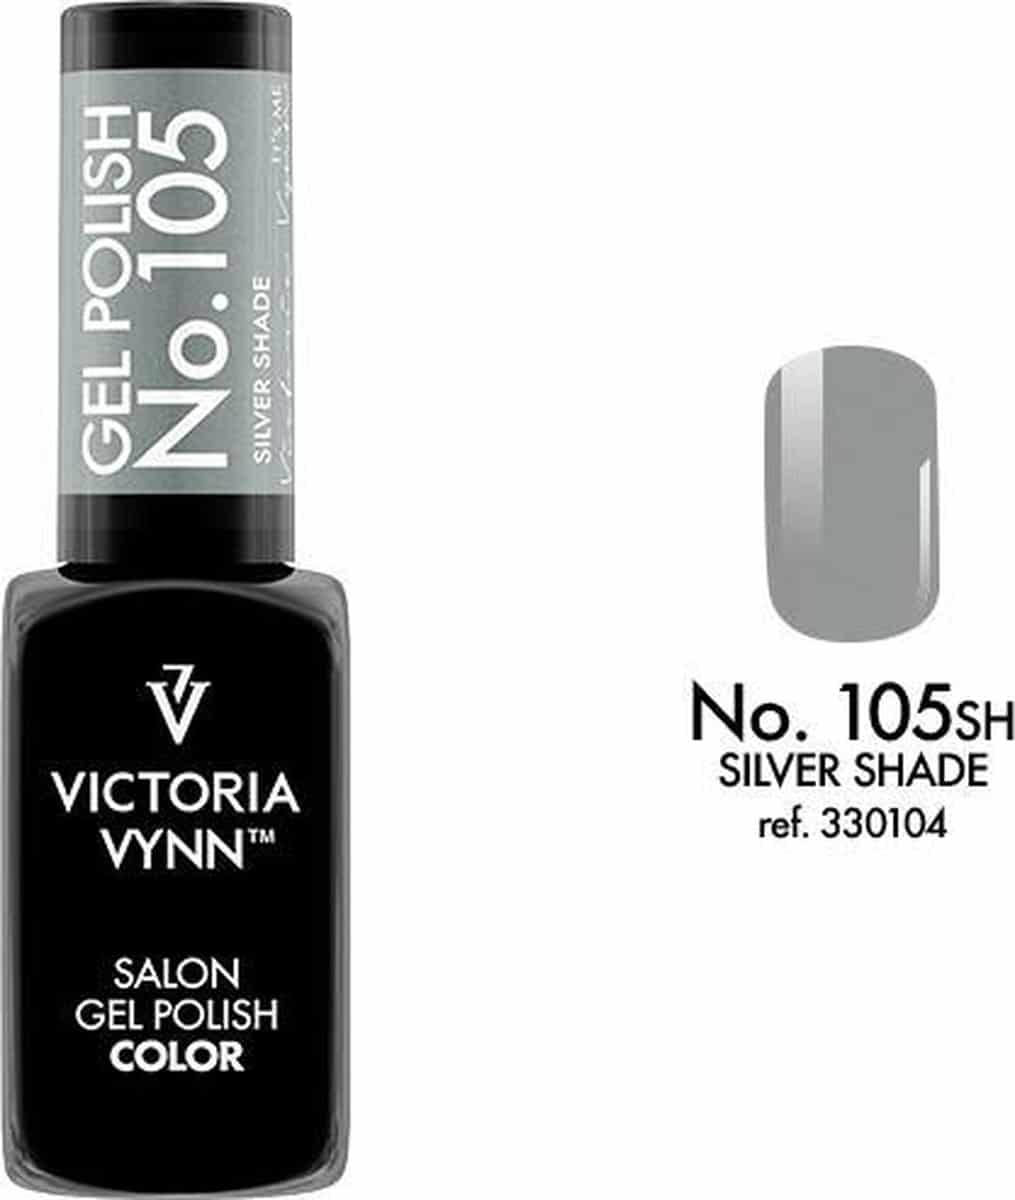 Gellak Victoria Vynn™ Gel Nagellak - Salon Gel Polish Color 105 - 8 ml. - Silver Shade